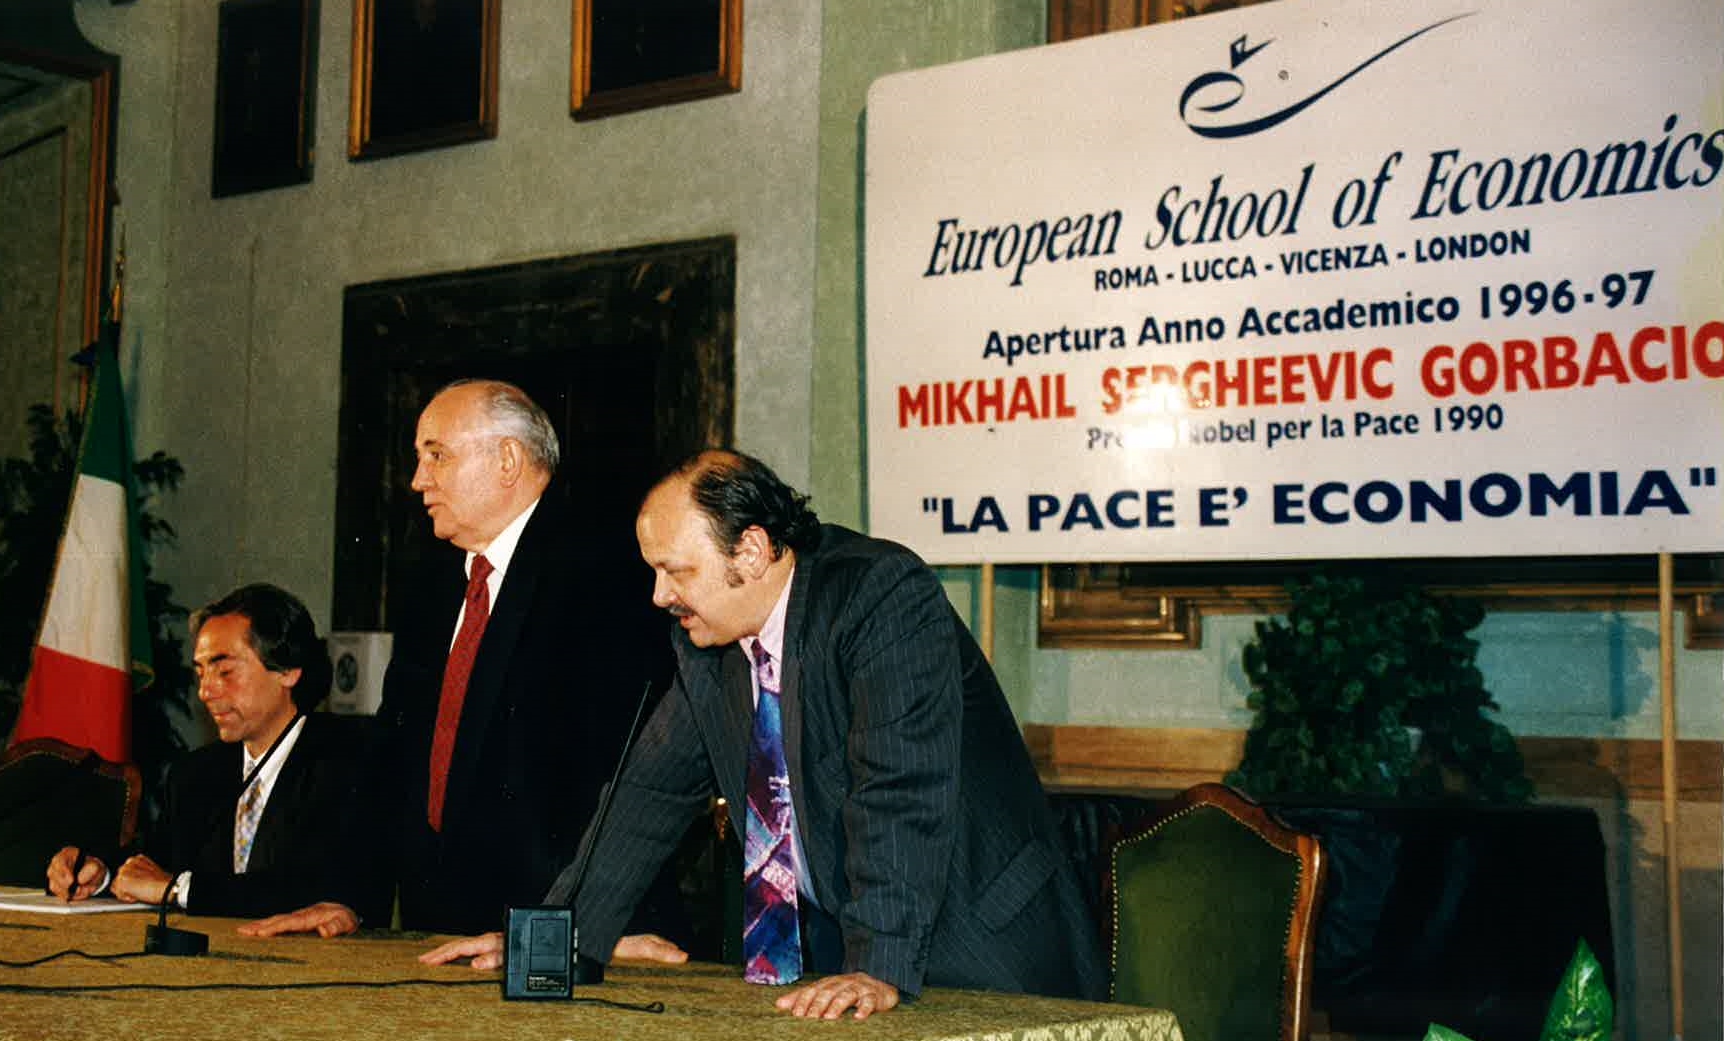 european school of economics nobel